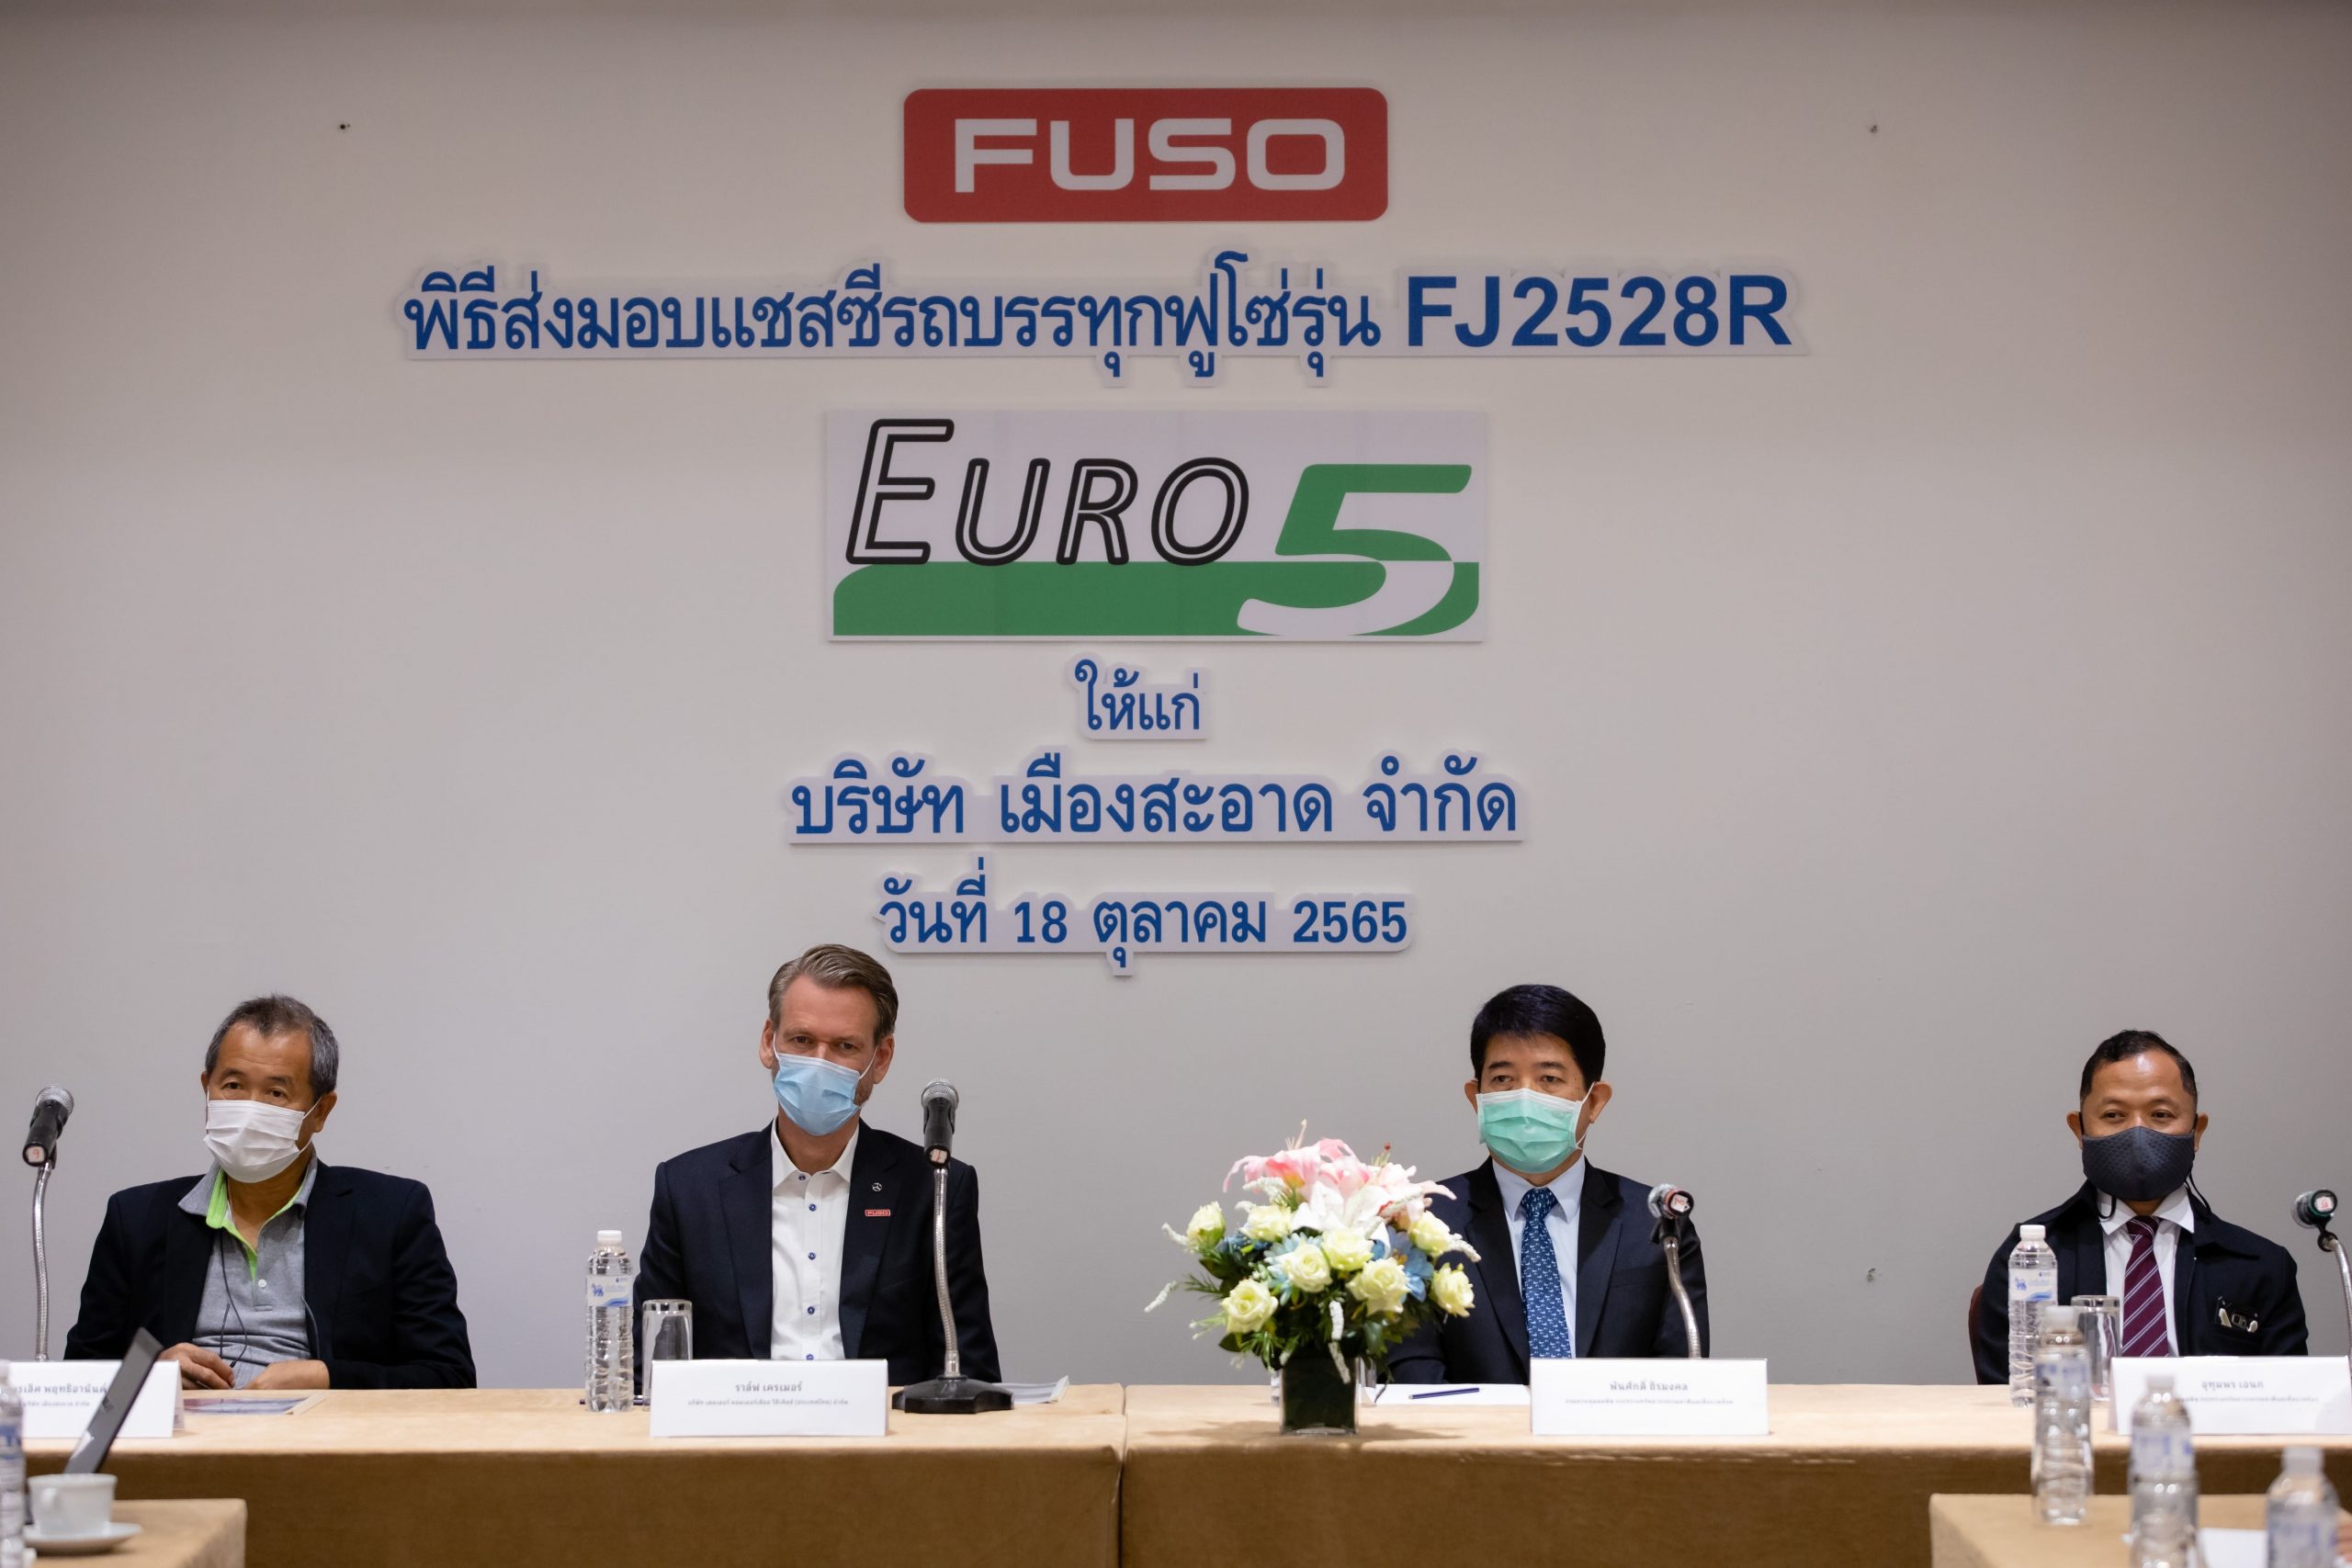 “เดมเลอร์ คอมเมอร์เชียล วีฮีเคิลส์ ประเทศไทย” ผนึกกำลัง “เมืองสะอาด” ส่งมอบรถฟูโซ่ Euro 5 คันแรก ขานรับนโยบายภาครัฐ มุ่งแก้ปัญหาฝุ่น PM 2.5